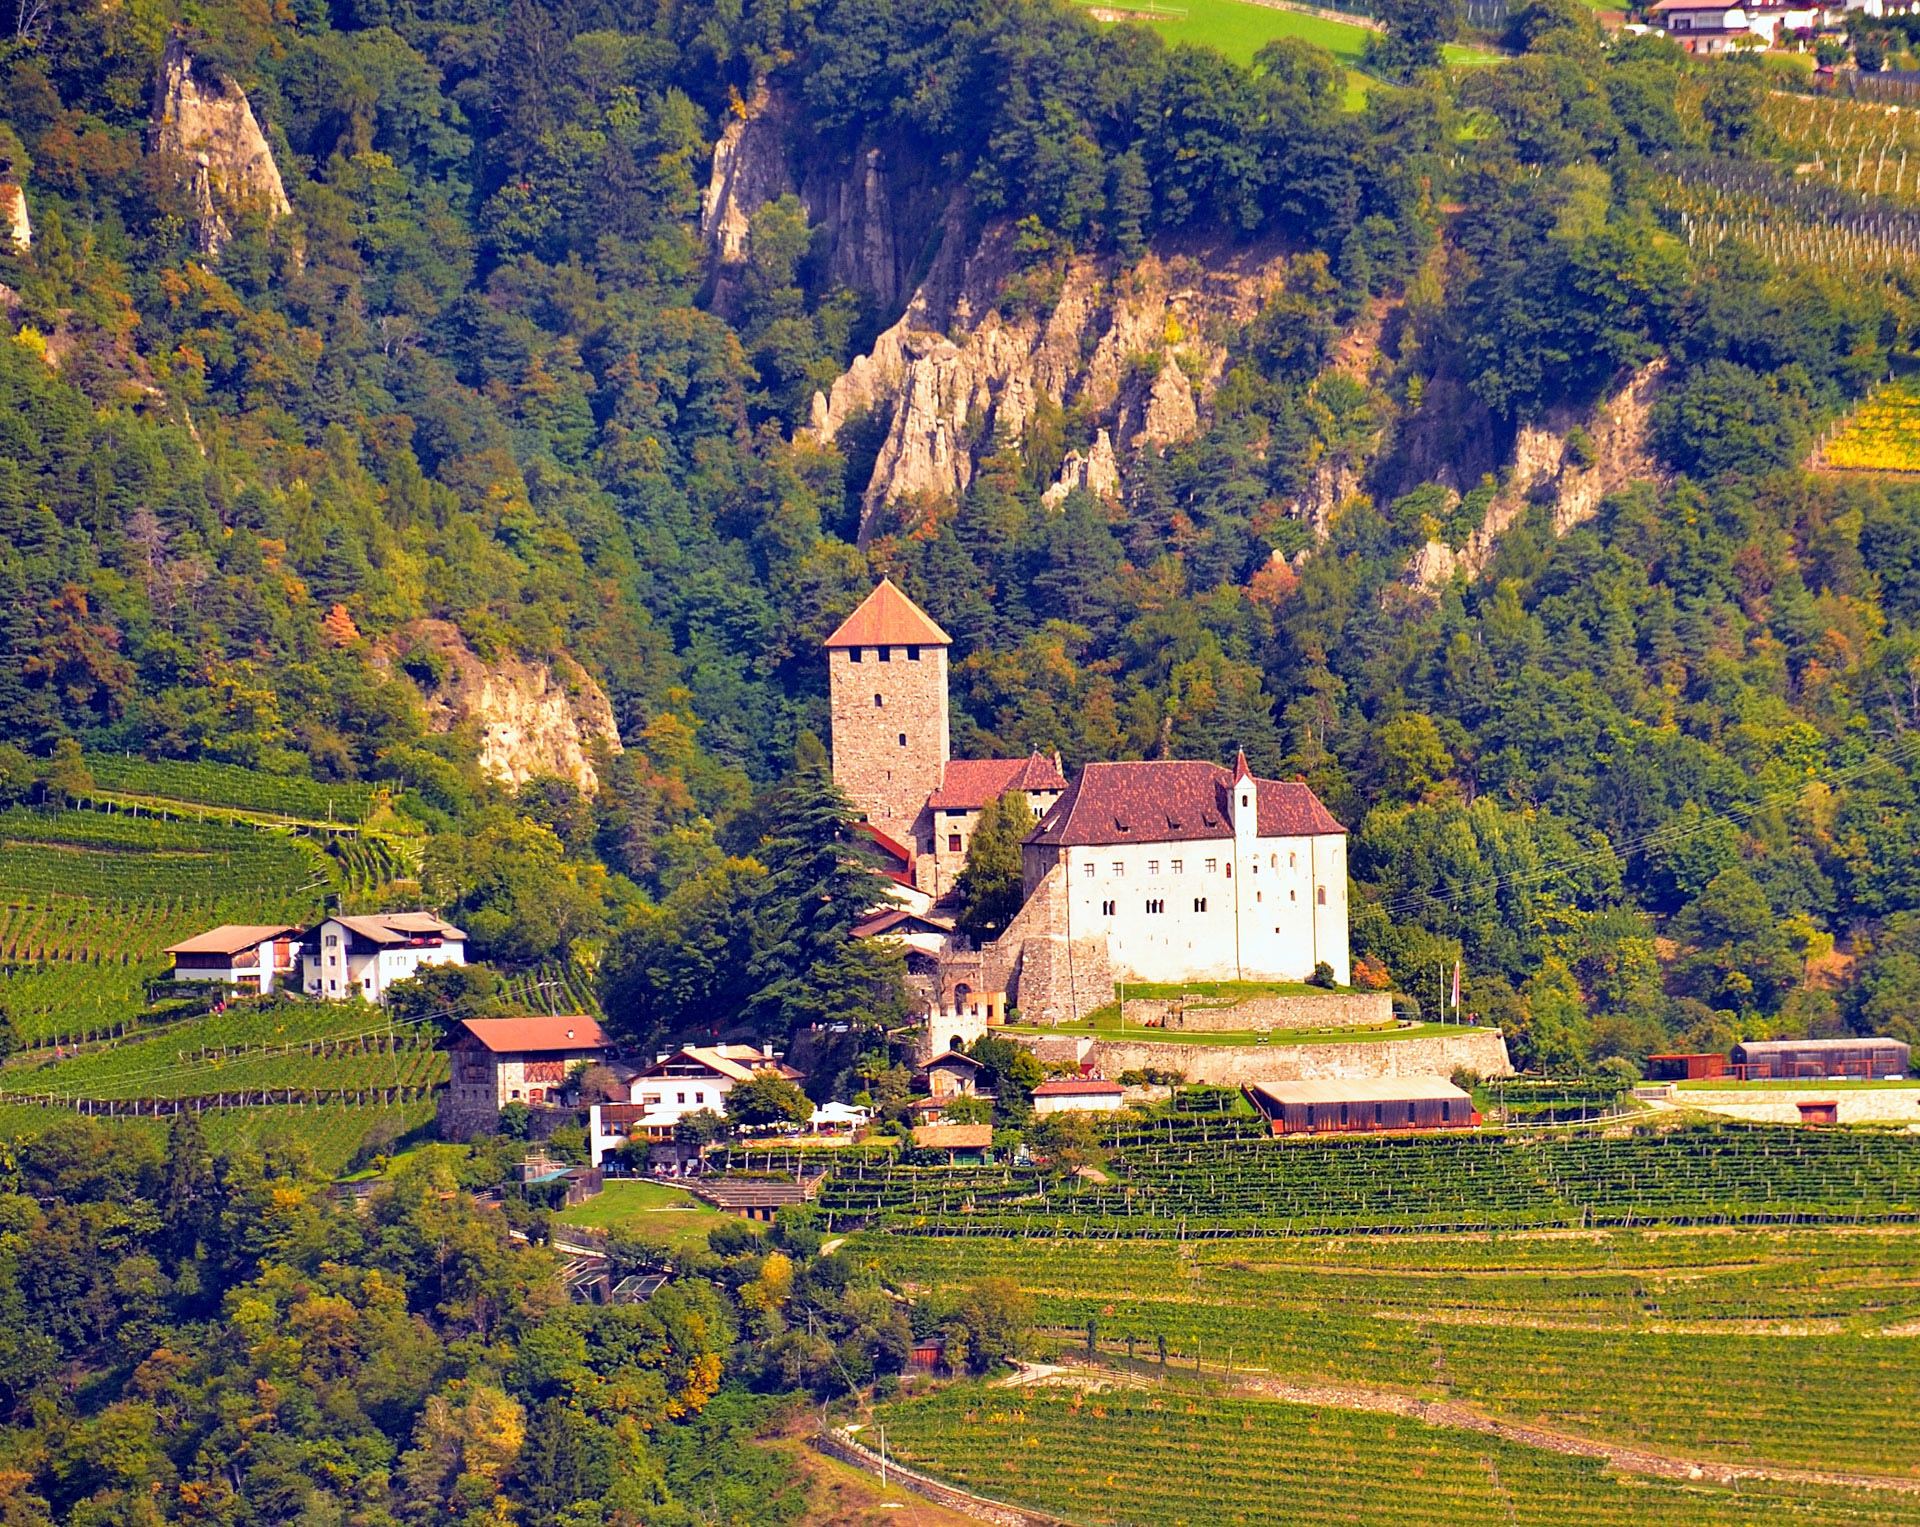 Blick auf die andere Talseite zum Schloss Tirol. Das Schloss Tirol in Dorf Tirol bei Meran im Burggrafenamt war die Stammburg der Grafen von Tirol und die Wiege des Landes Tirol. Bis in das 15. Jahrhundert, als die politische Verwaltung in das verkehrstechnisch g�ere Innsbruck verlegt wurde, war die Burg Residenz der Landesf�.